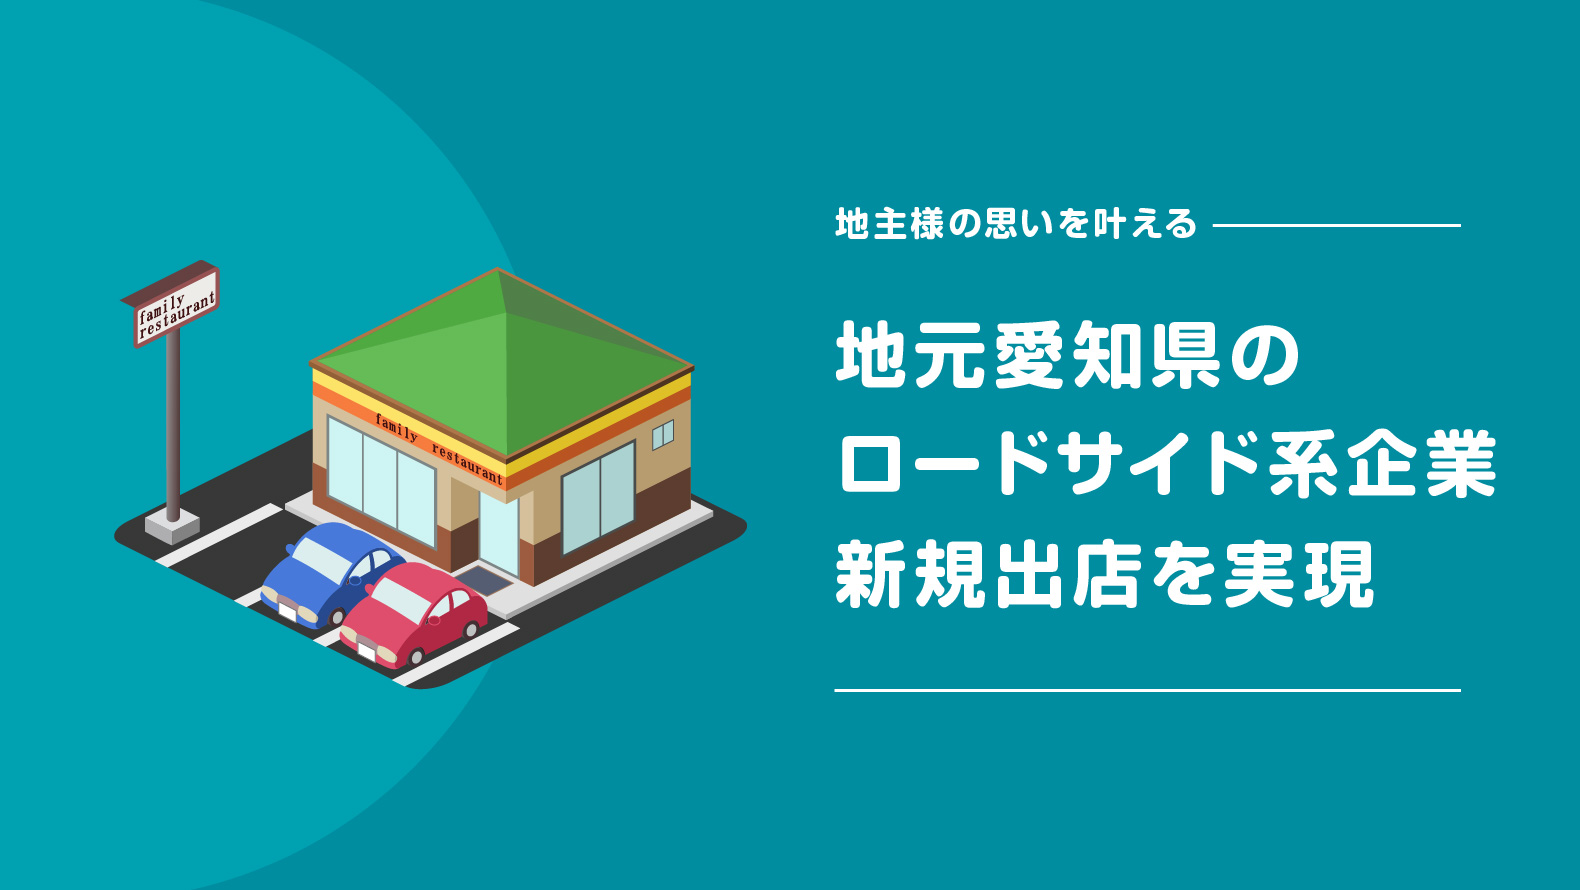 地元愛知県のロードサイド系企業の新規出店を実現